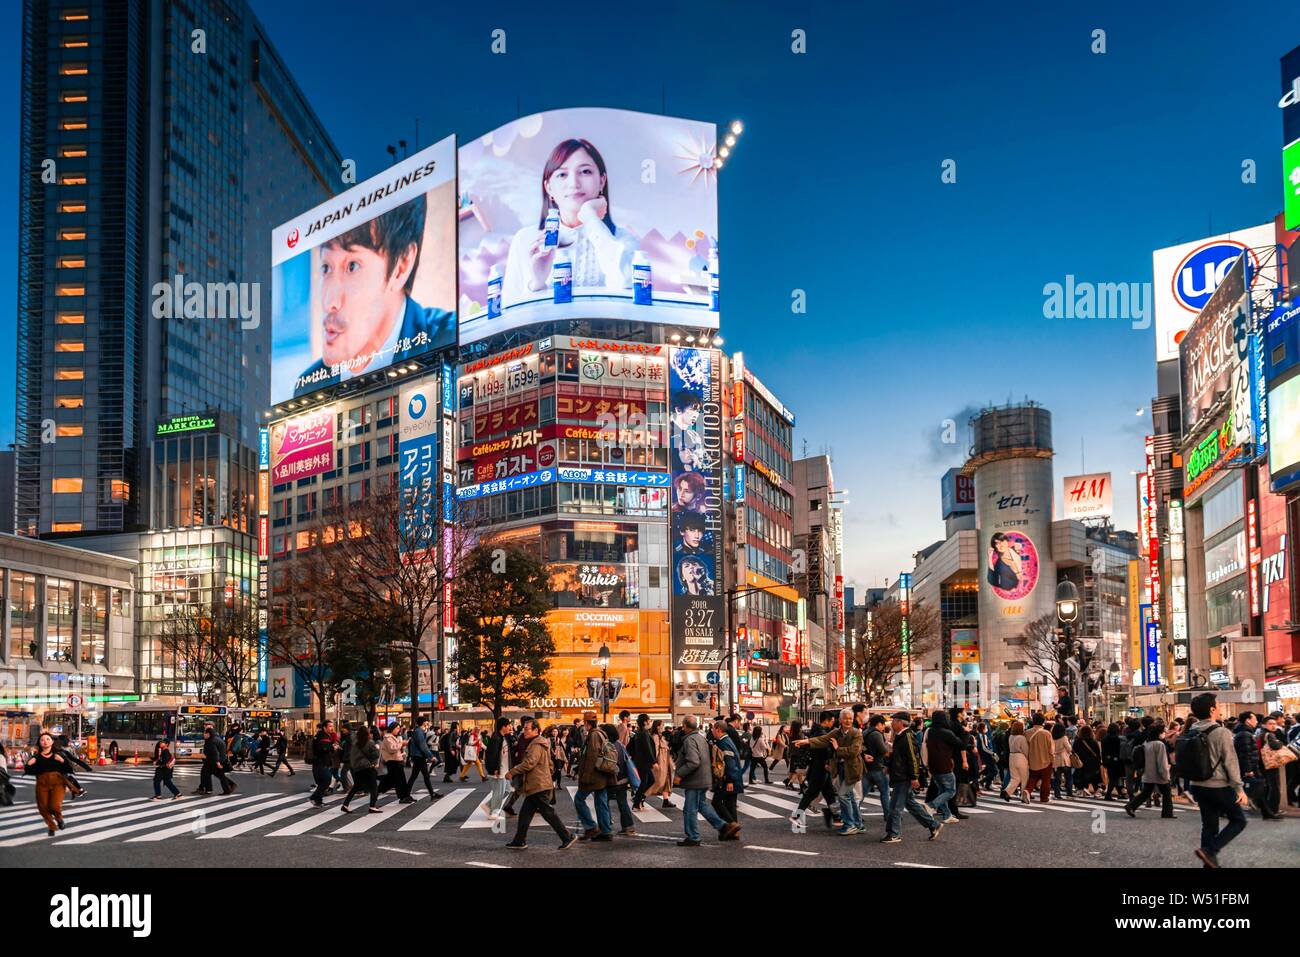 Shibuya Crossing, crowds at crossroads, colorful signs and illuminated advertising at dusk, railway station Shibuya, Shibuya, Udagawacho, Tokyo, Japan Stock Photo